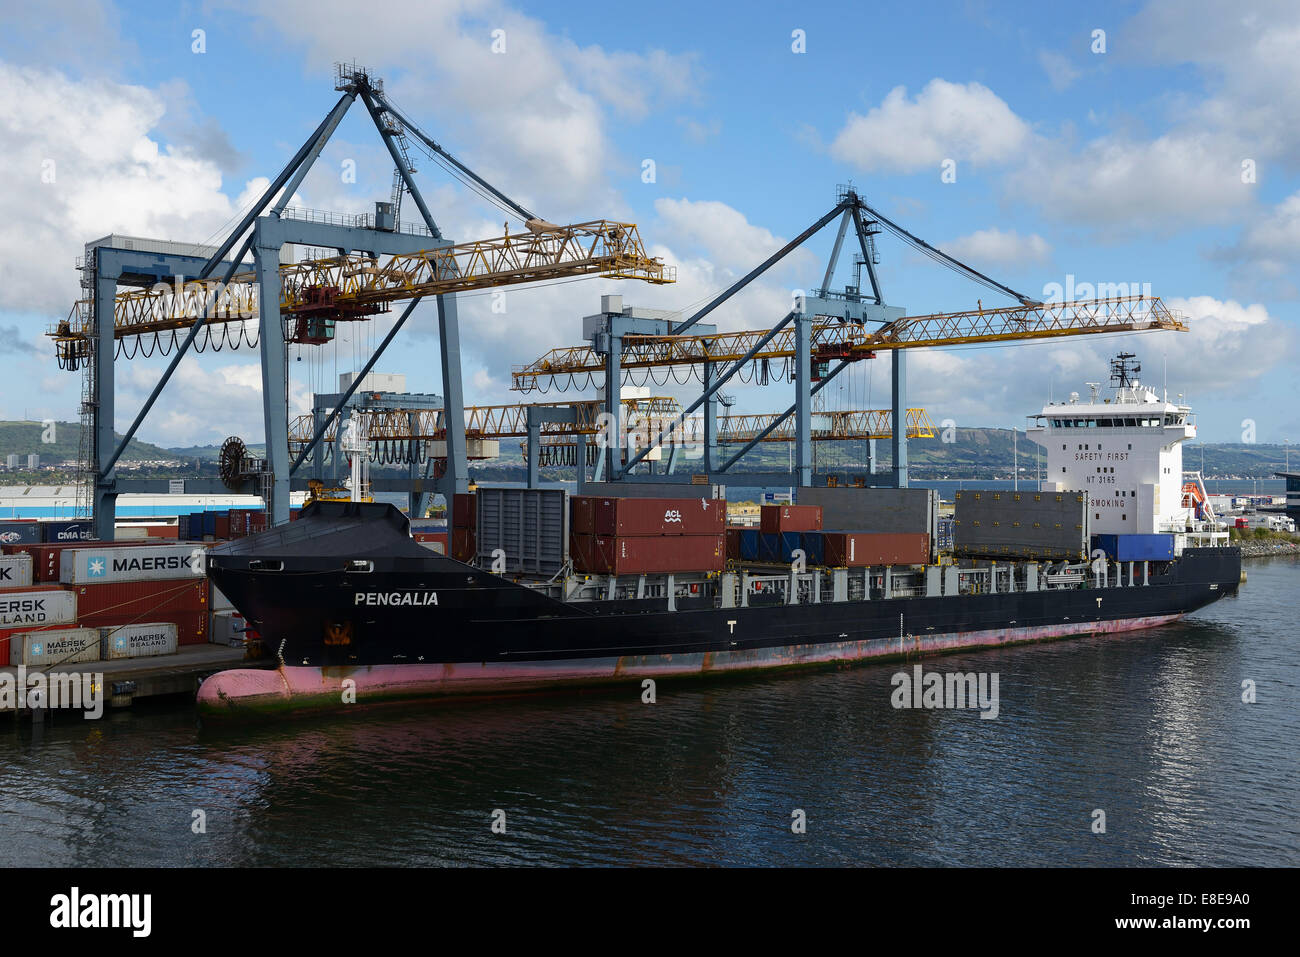 Il contenitore Pengalia nave ormeggiata al Porto di Belfast Irlanda del Nord Regno Unito Foto Stock